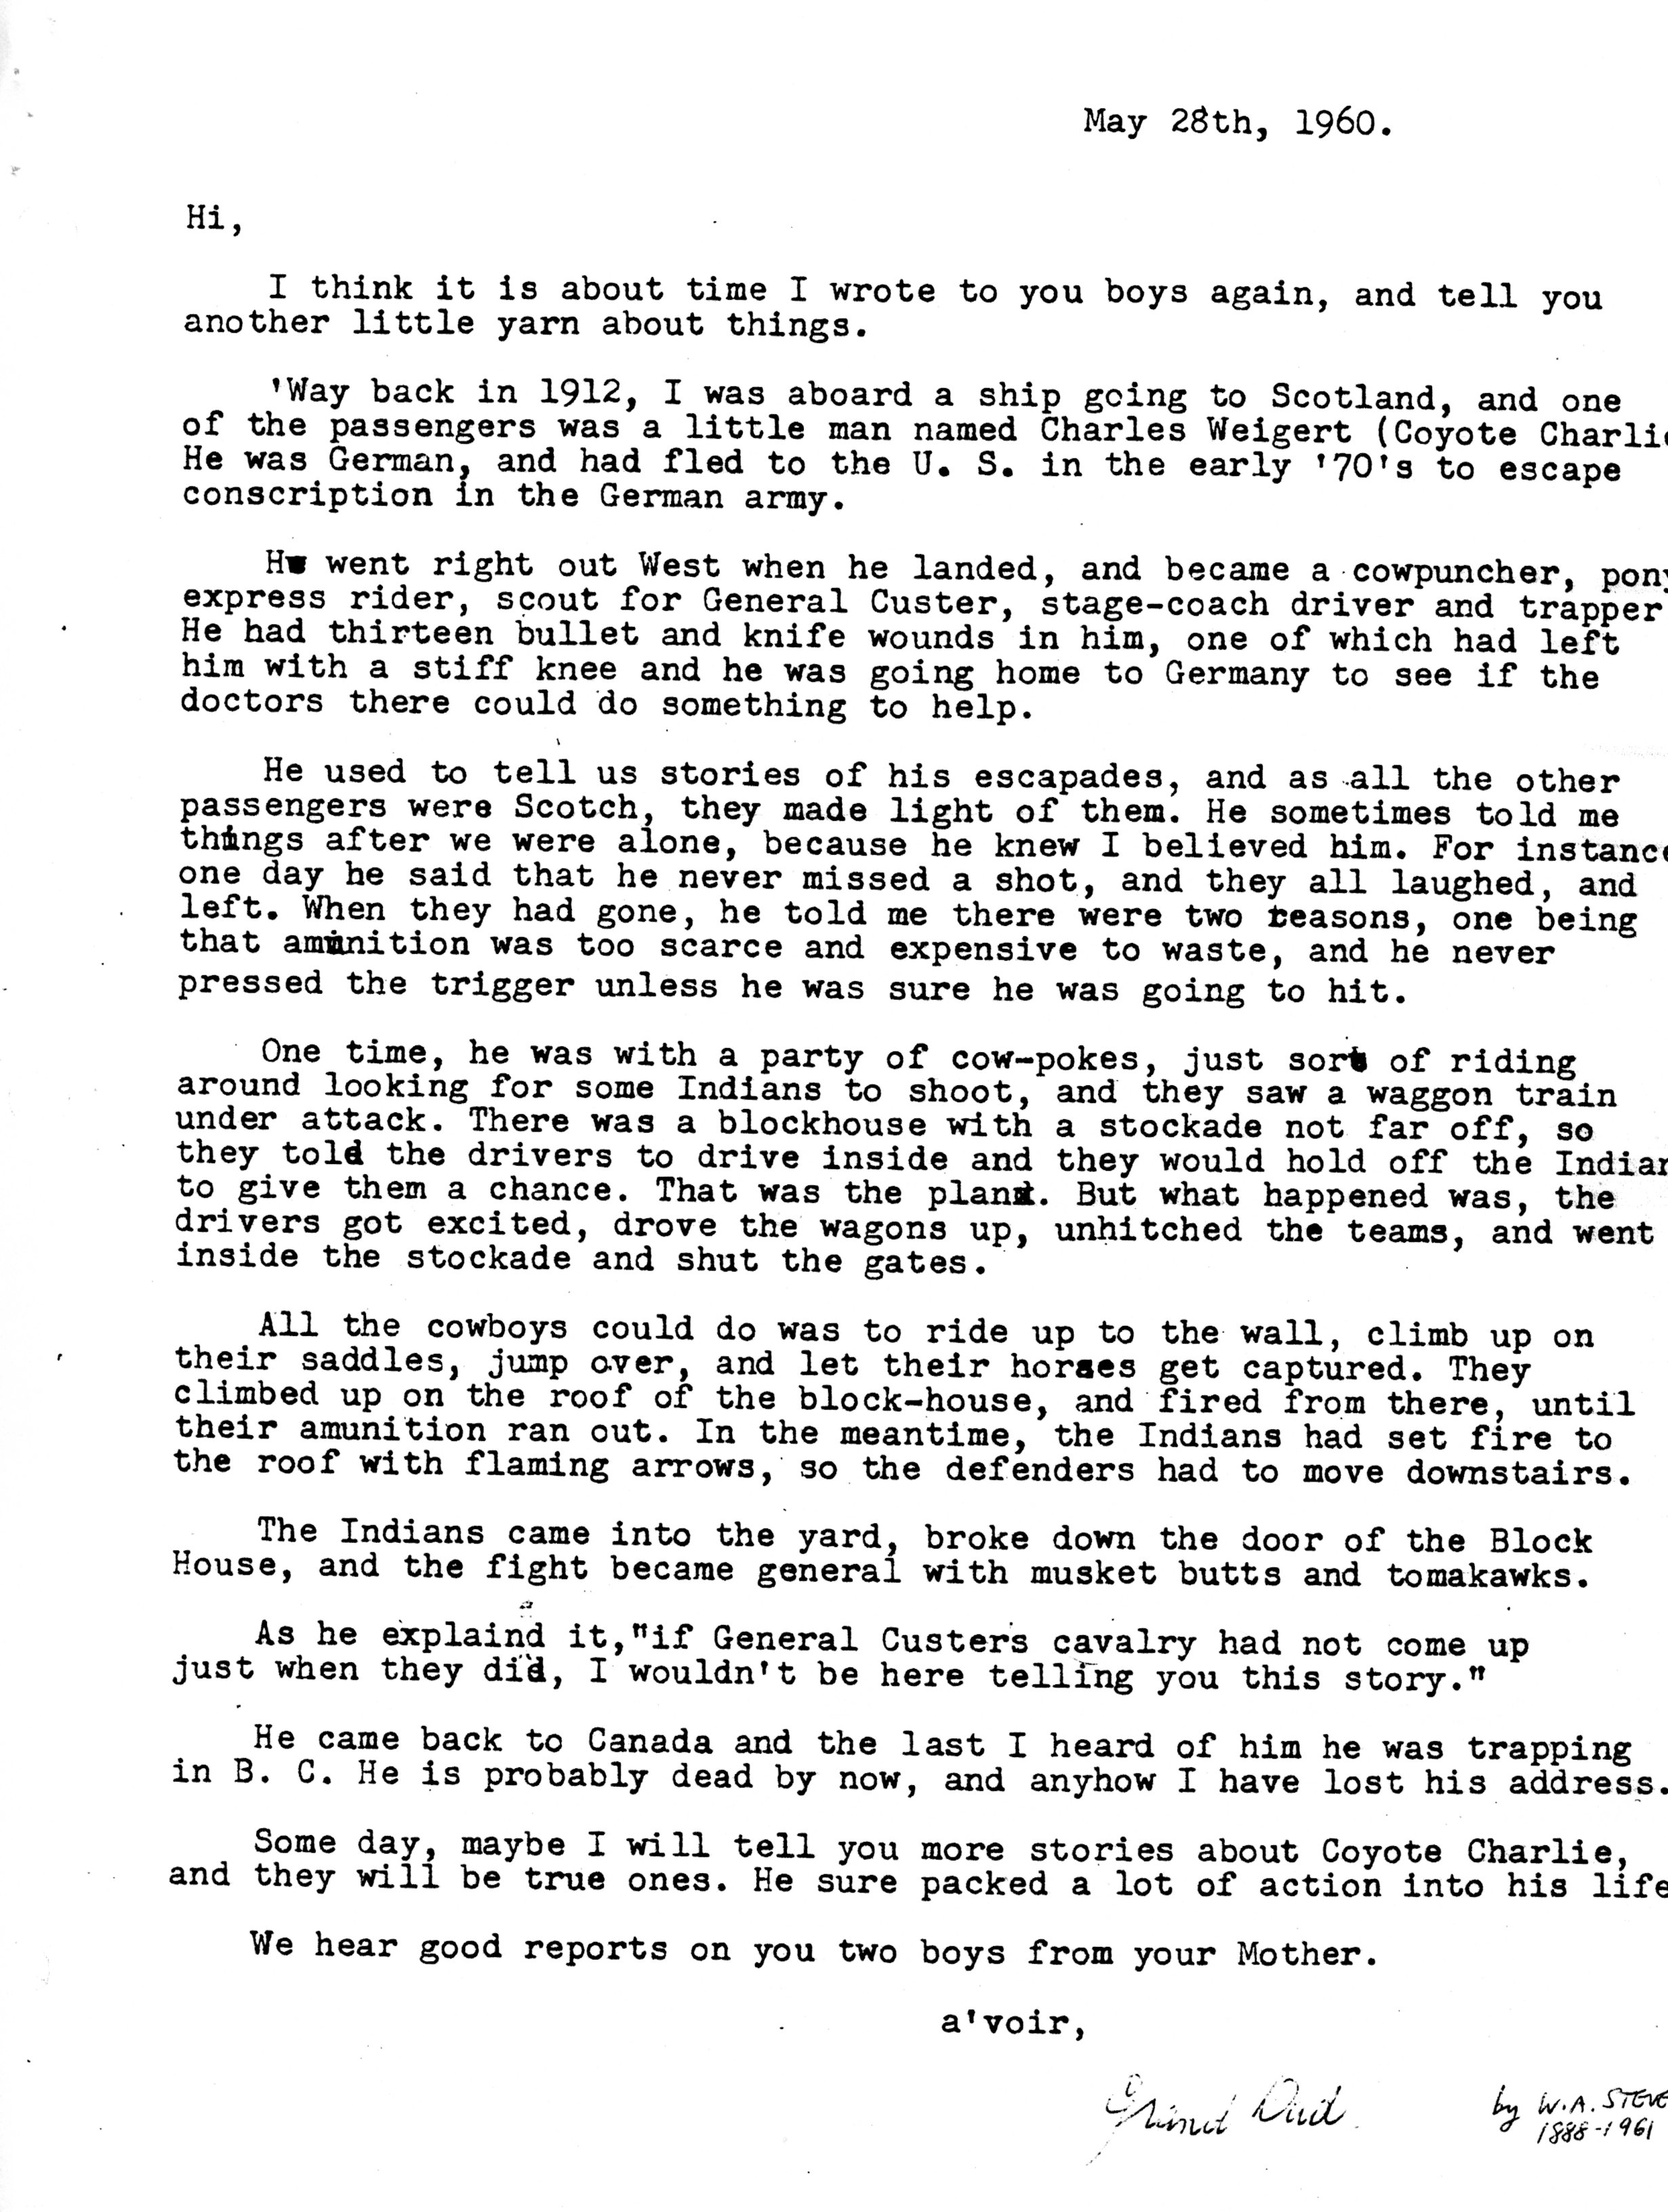 1960-05-28 Letters from Wm Arnott STEVENS